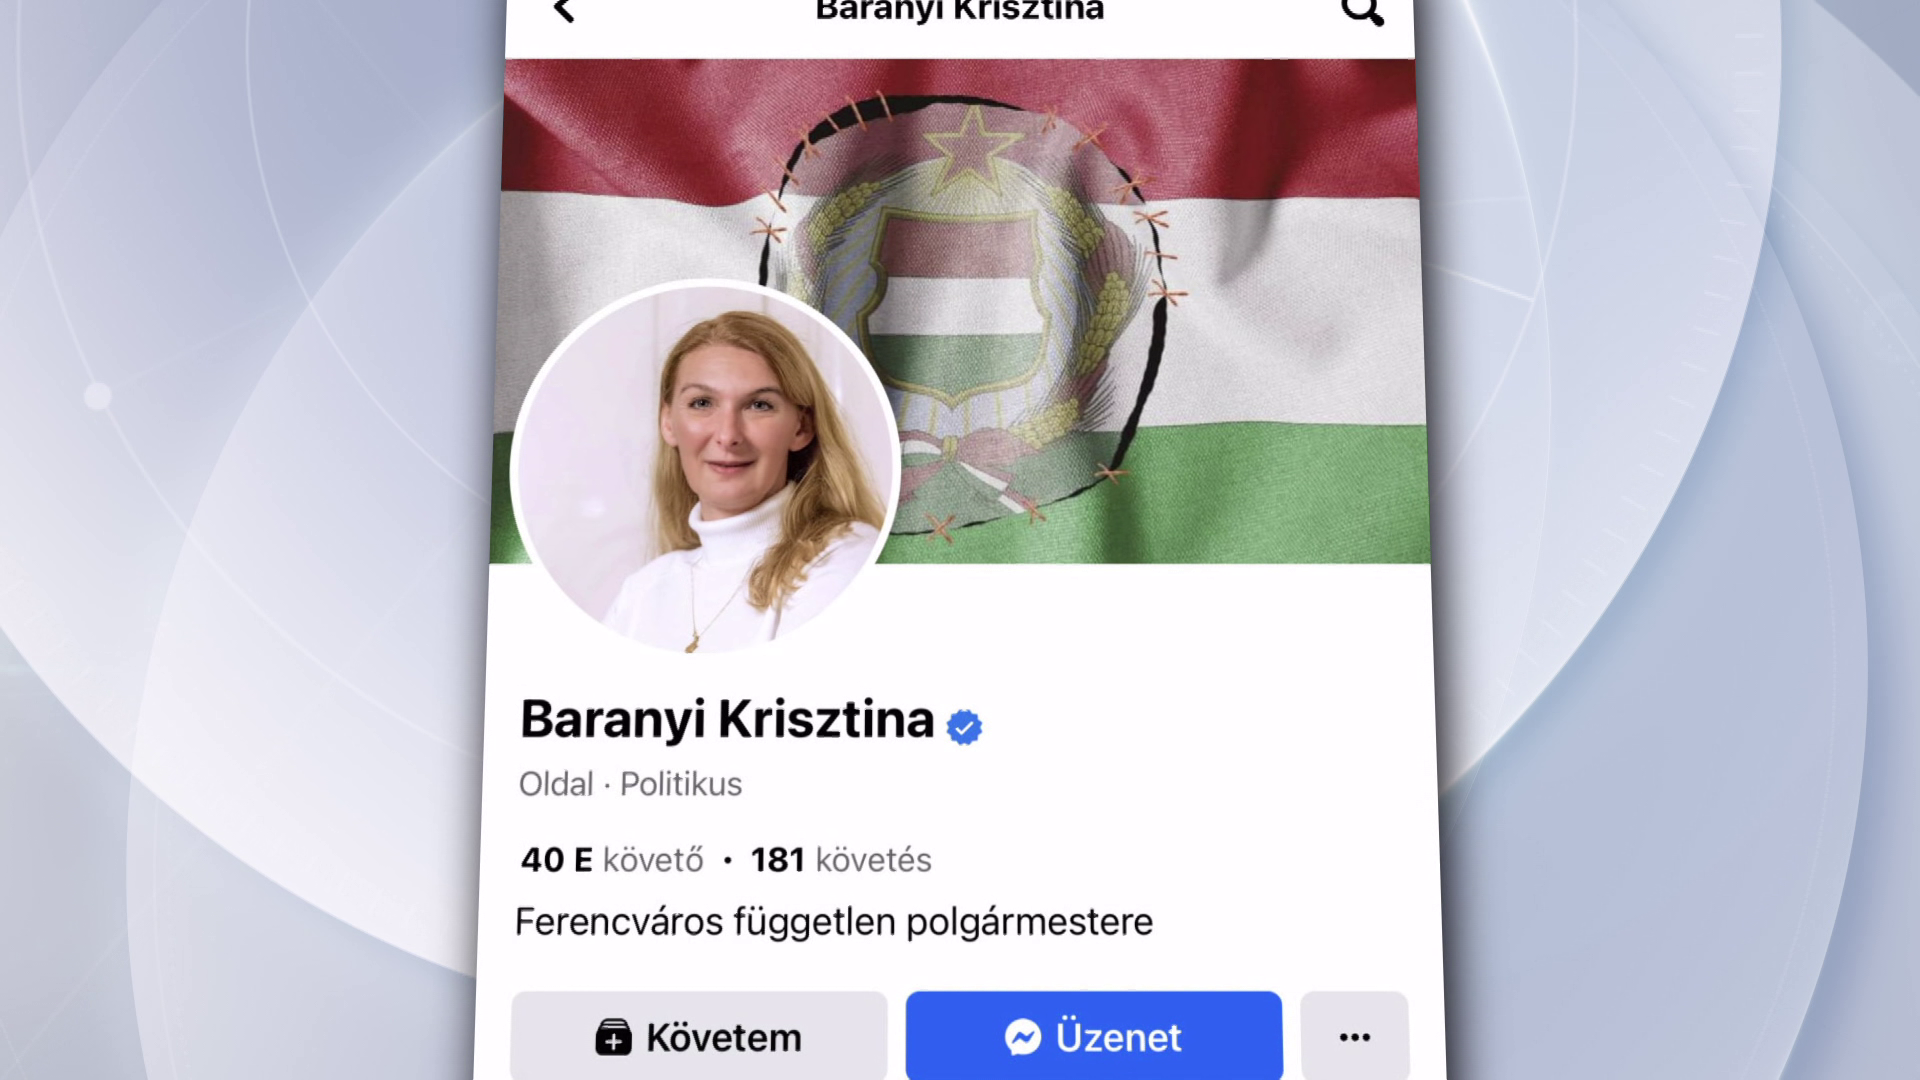 Vörös csillagot rakott a magyar zászlóba Baranyi Krisztina, feljelentették 